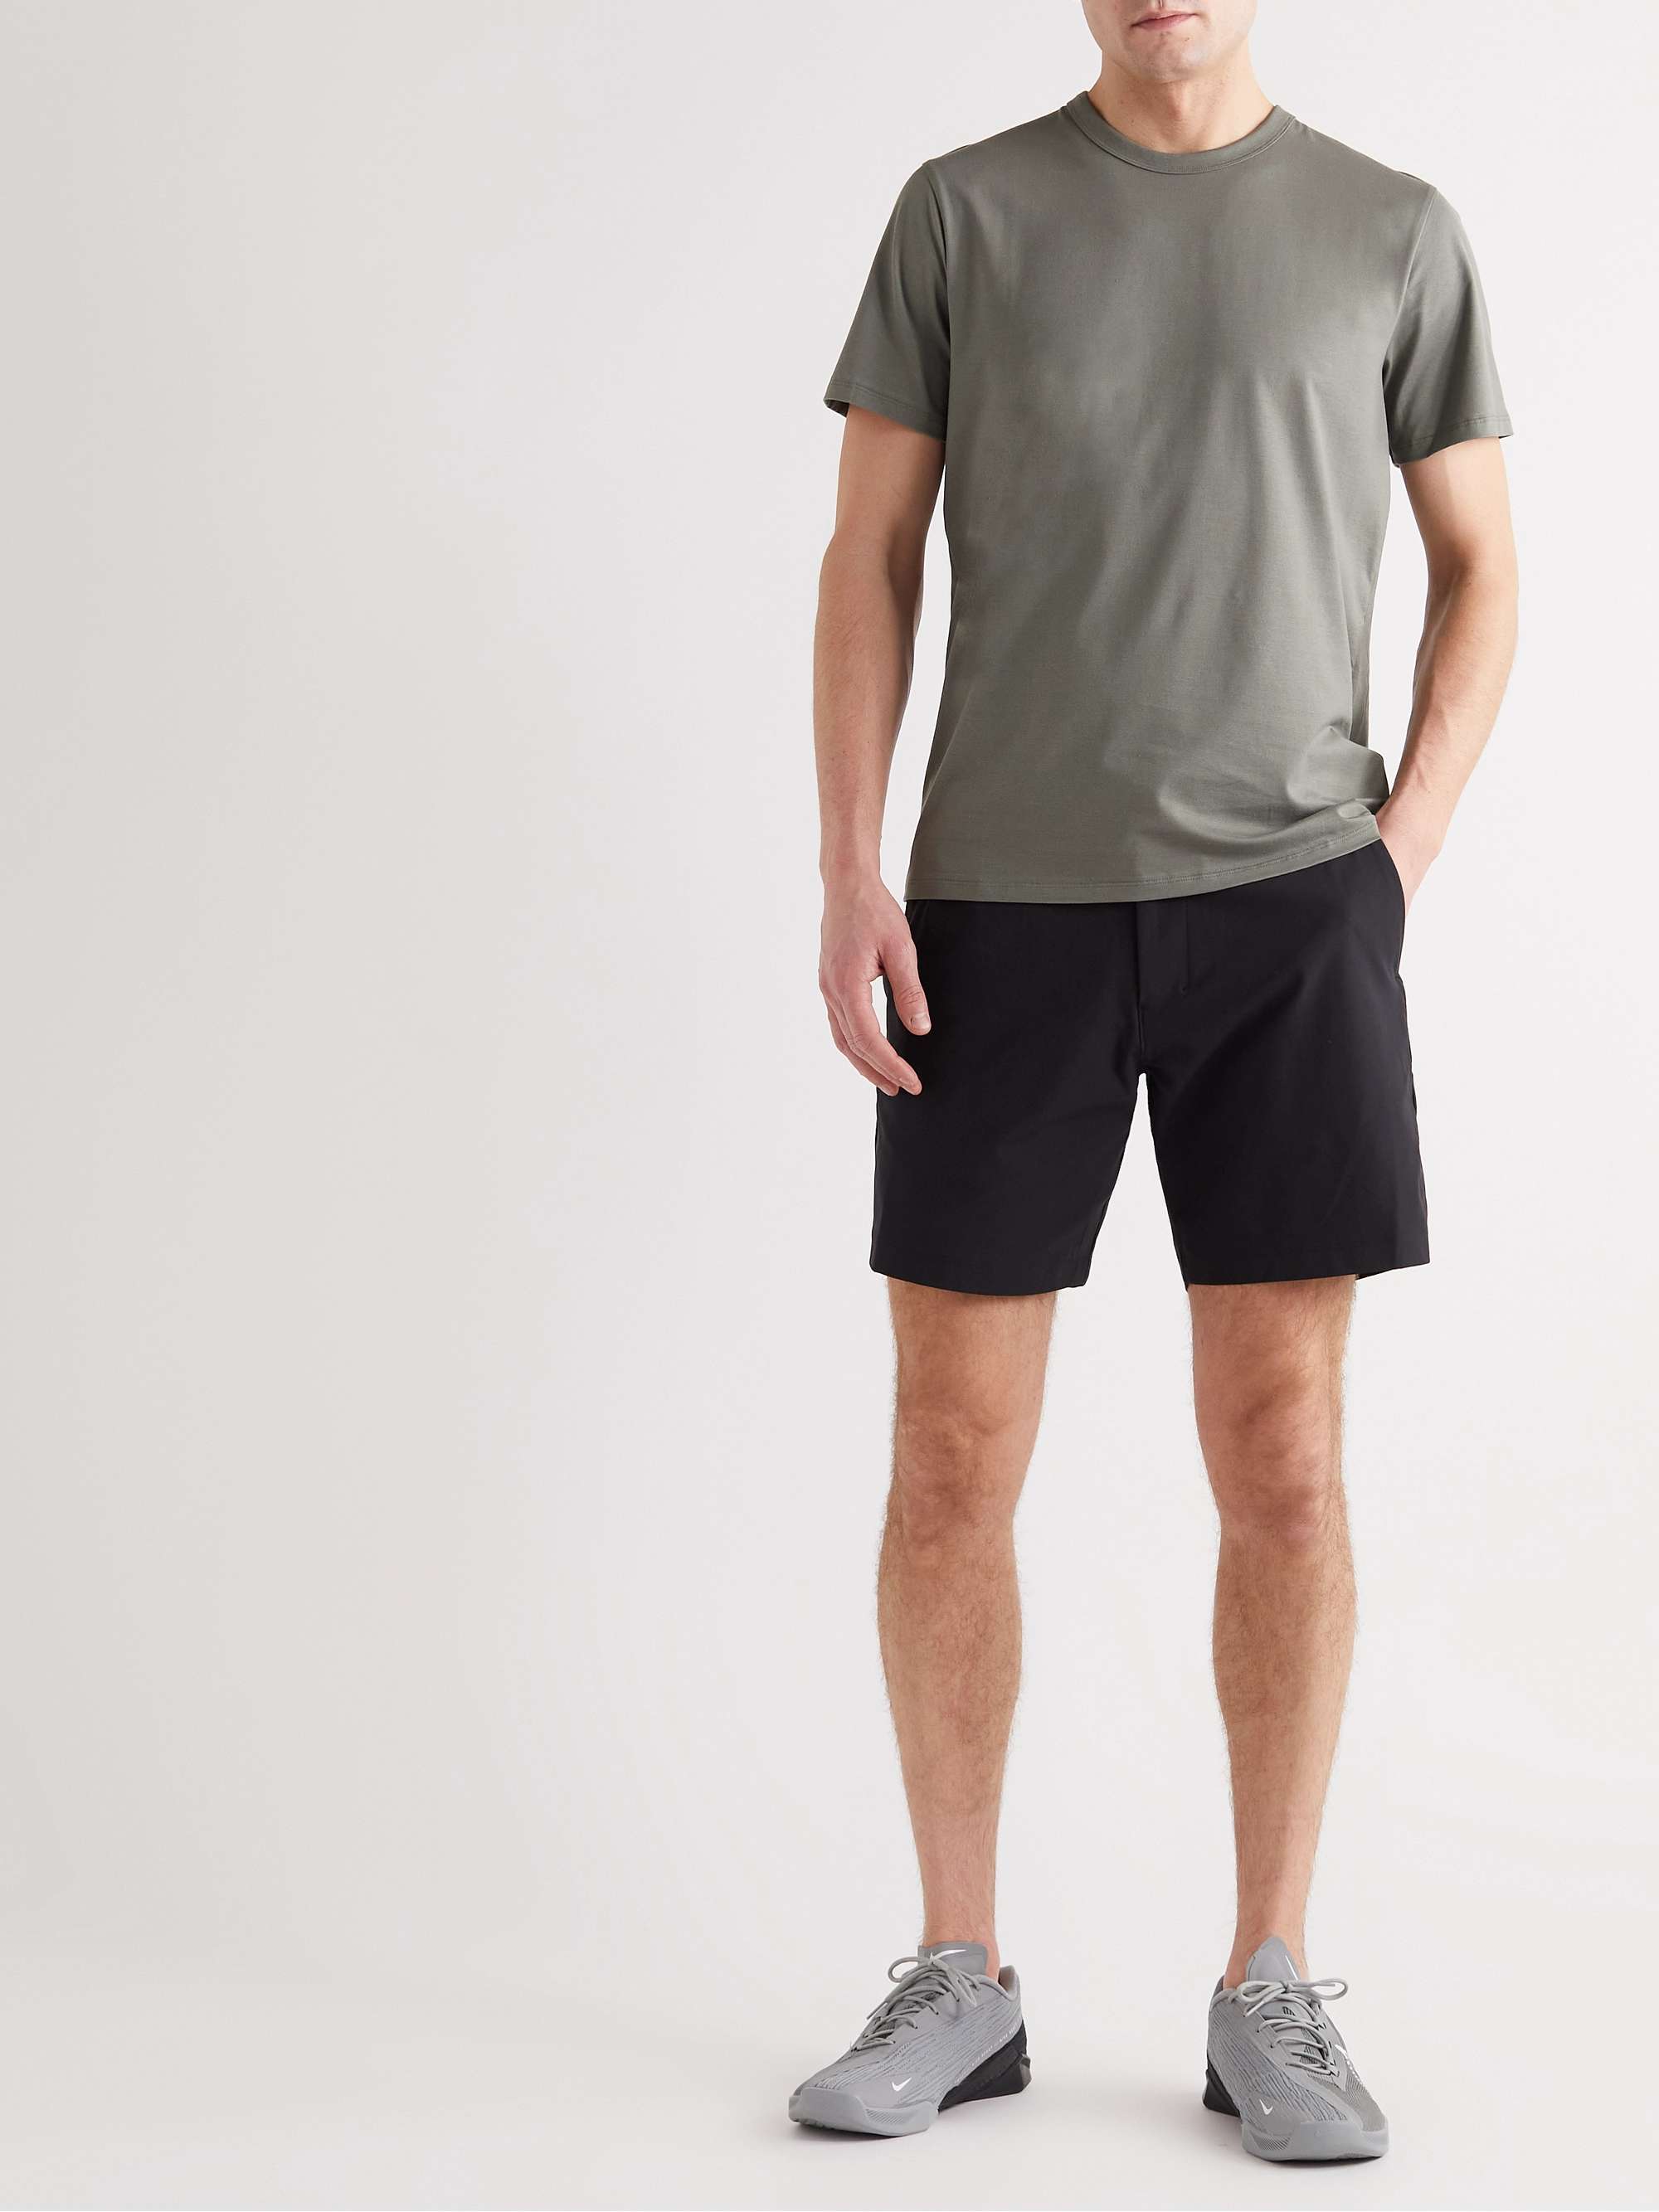 LULULEMON Commission Slim-Fit Warpstreme Shorts for Men